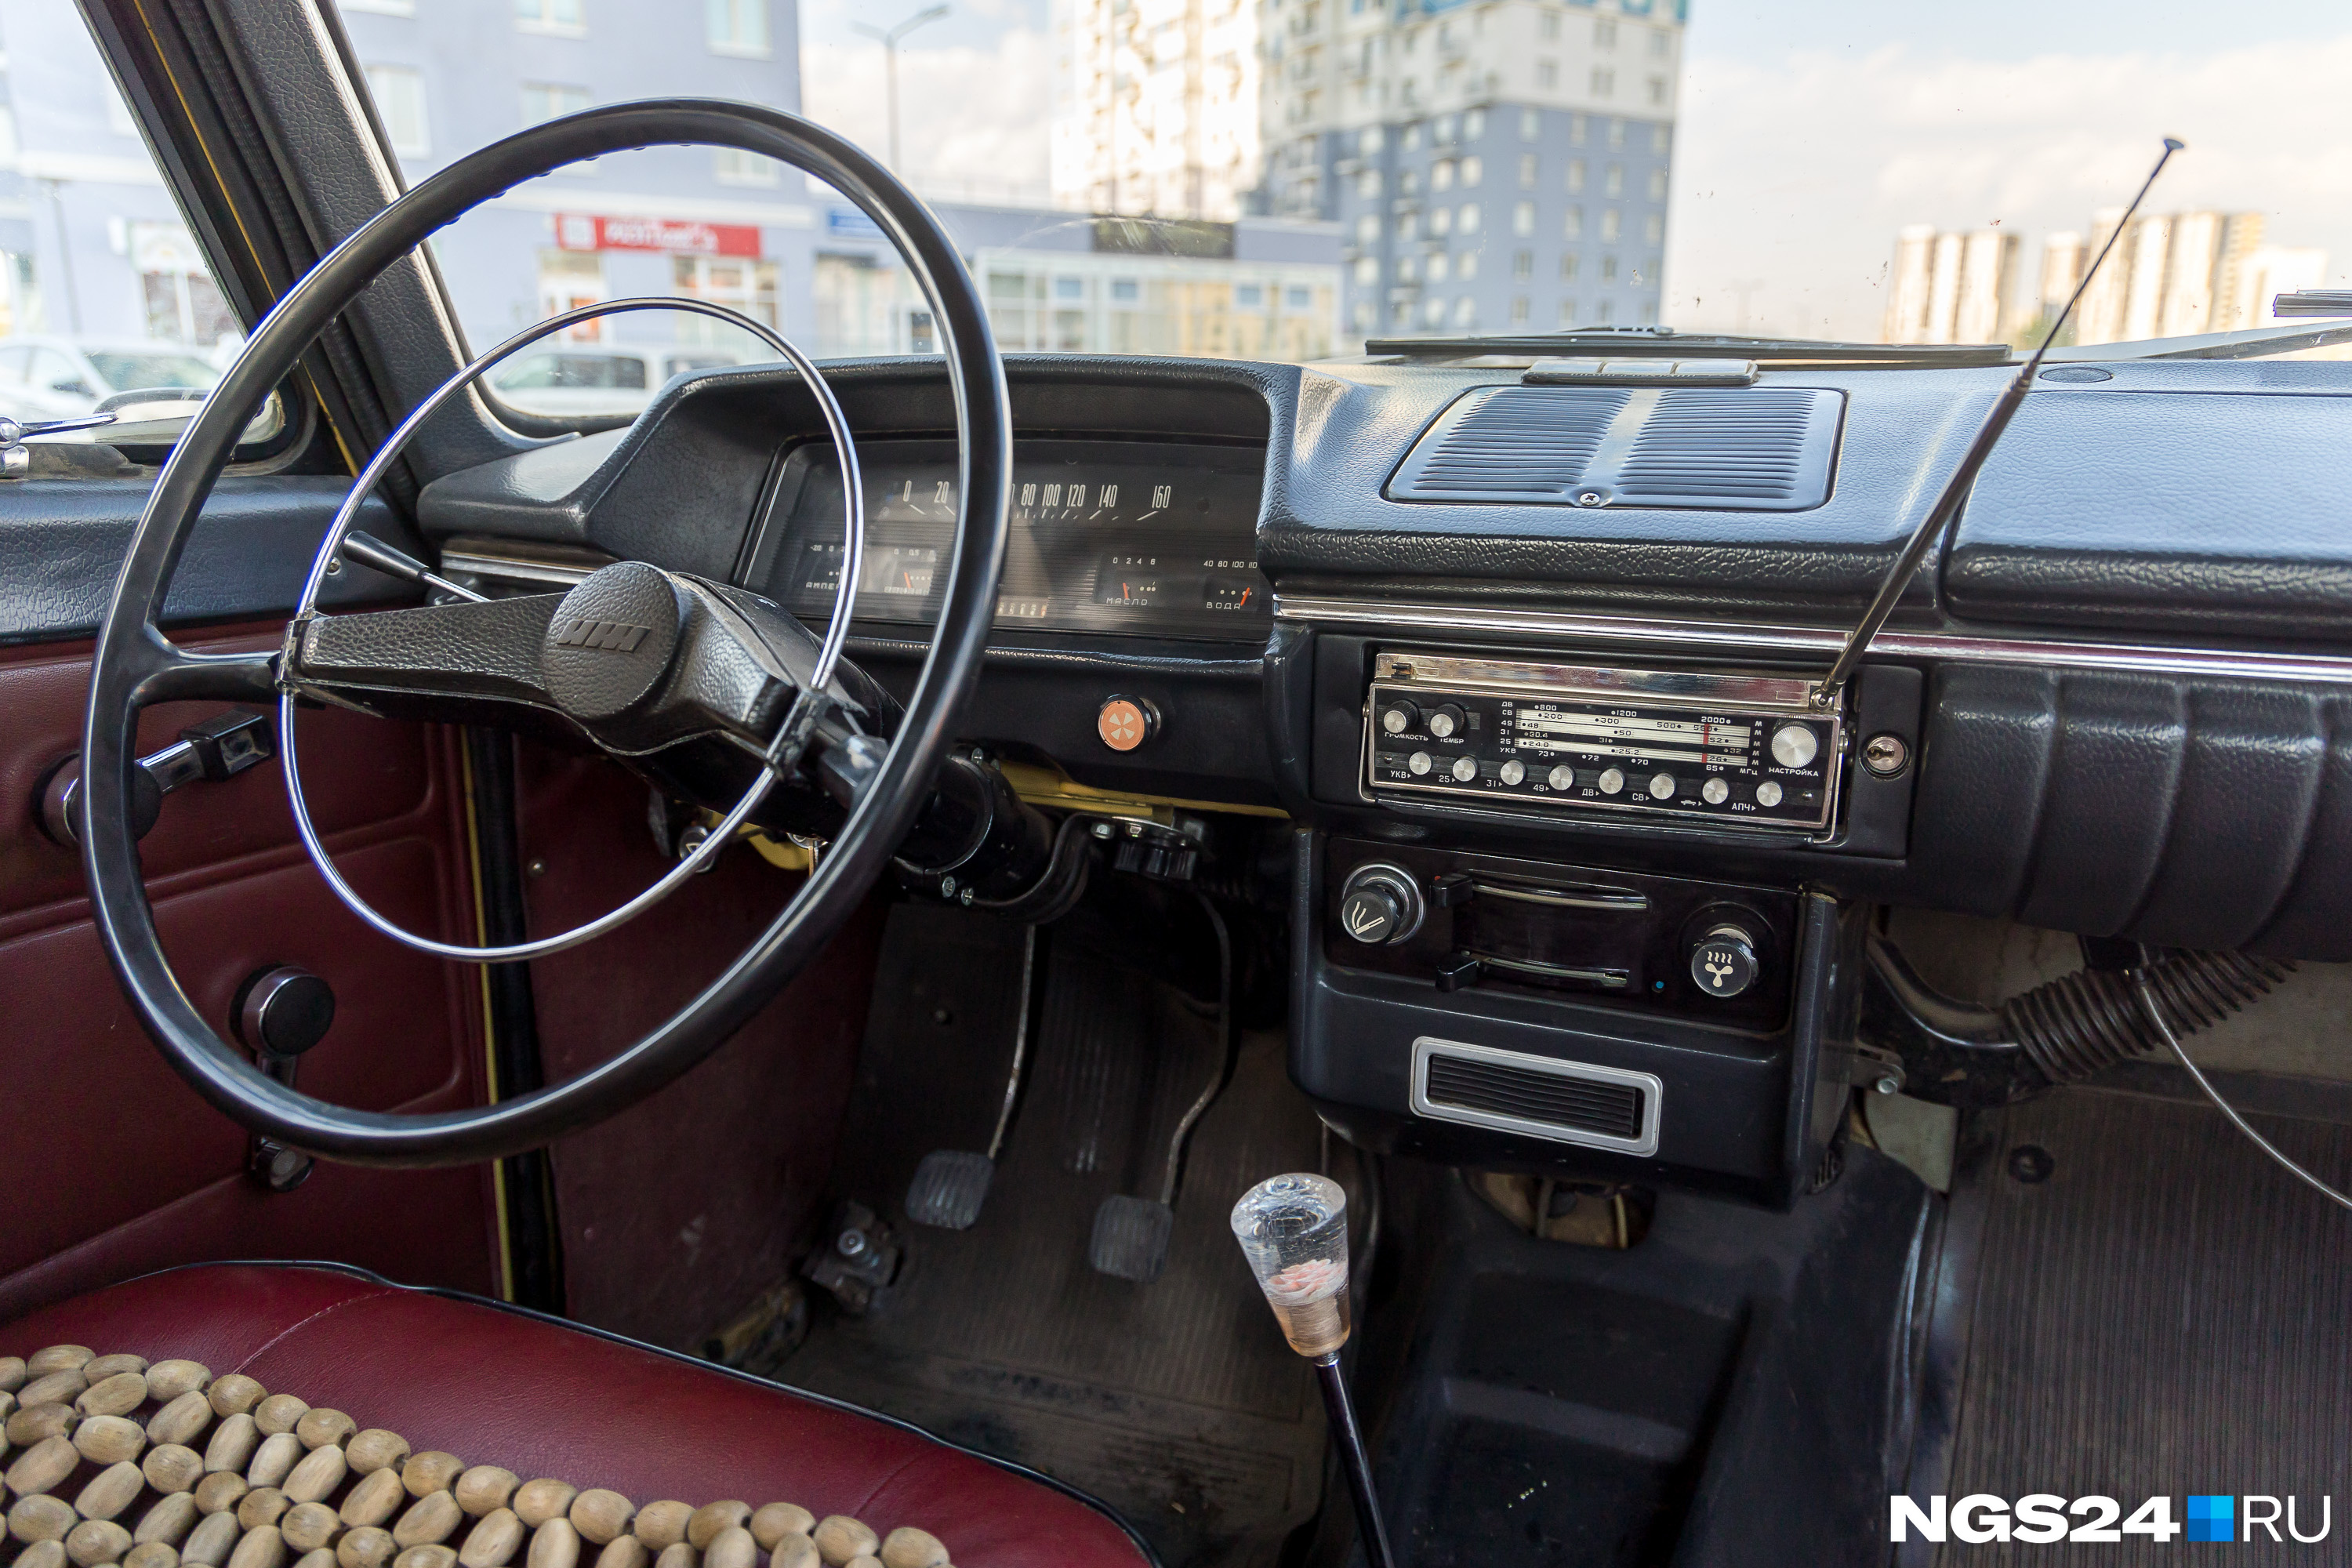 Многие водители не хотят переделывать старые машины. Даже в деталях: съемная магнитола «<nobr class="_">Урал-Авто-2</nobr>» до сих пор работает и ловит радио